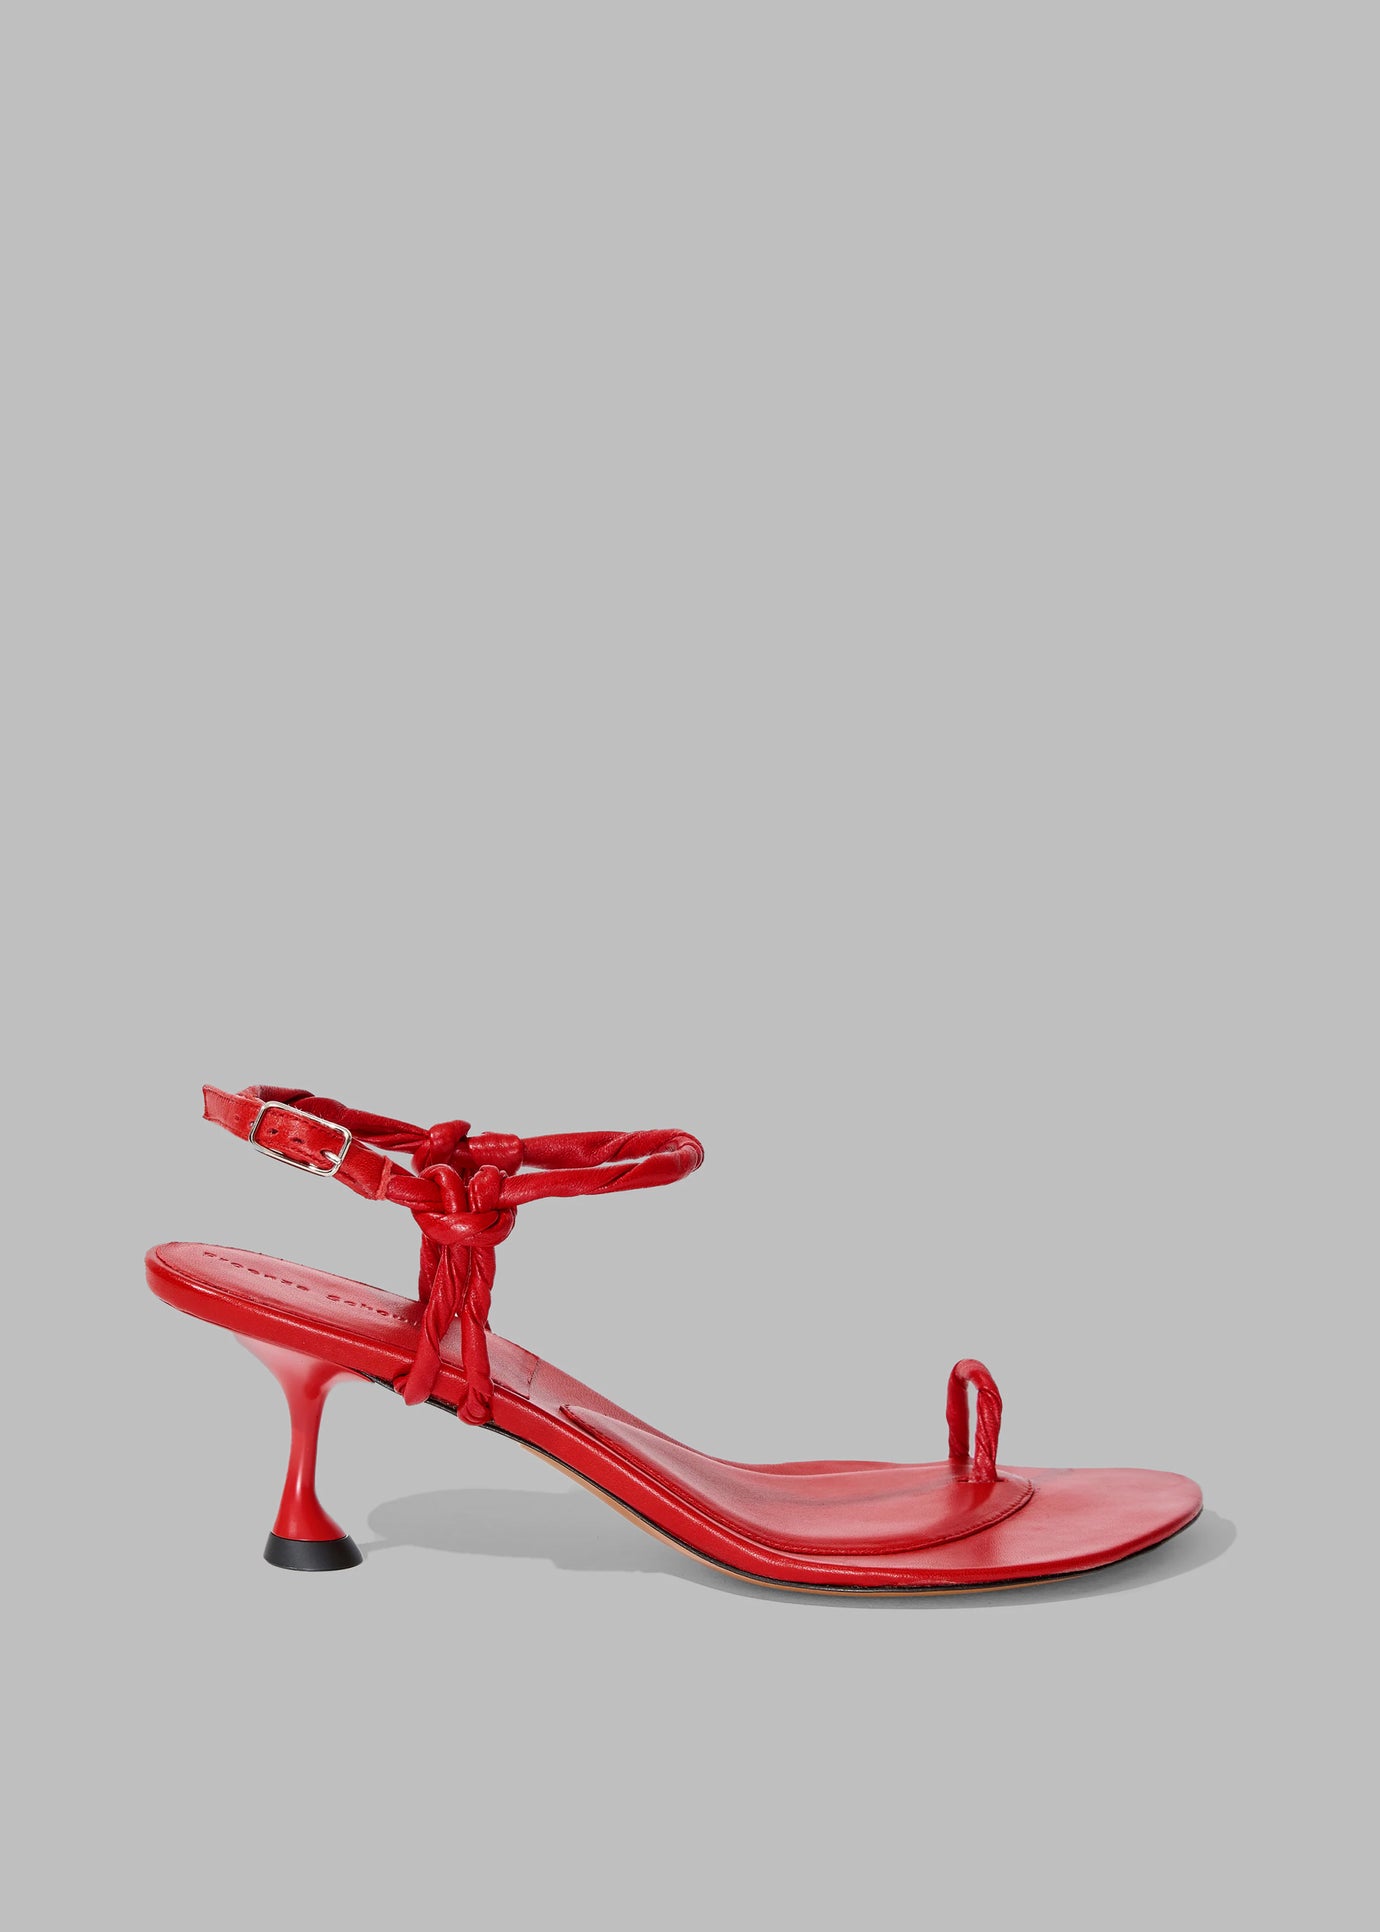 Proenza Schouler Tee Toe Ring Sandals - Red